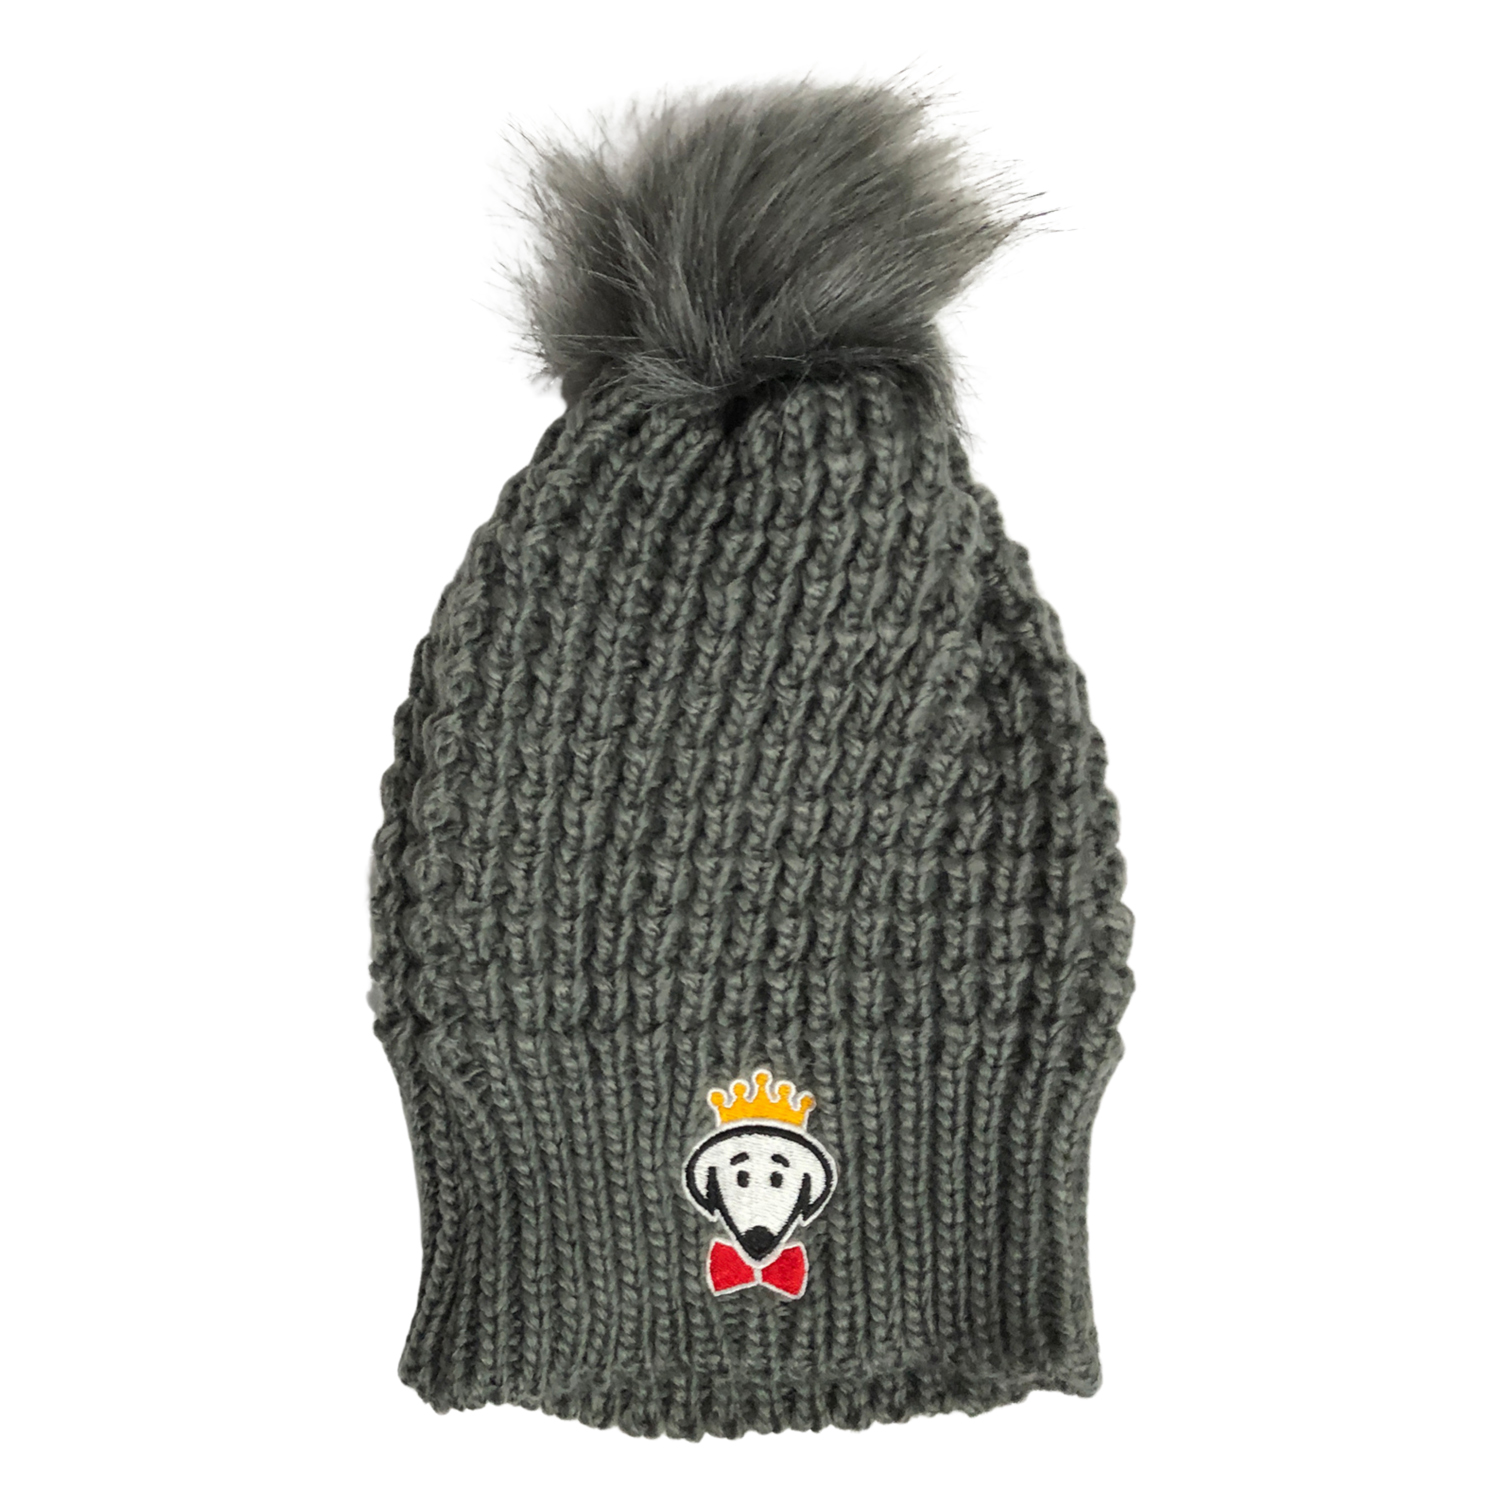 Beau Tyler - Belle winter knit hat gray temp 2